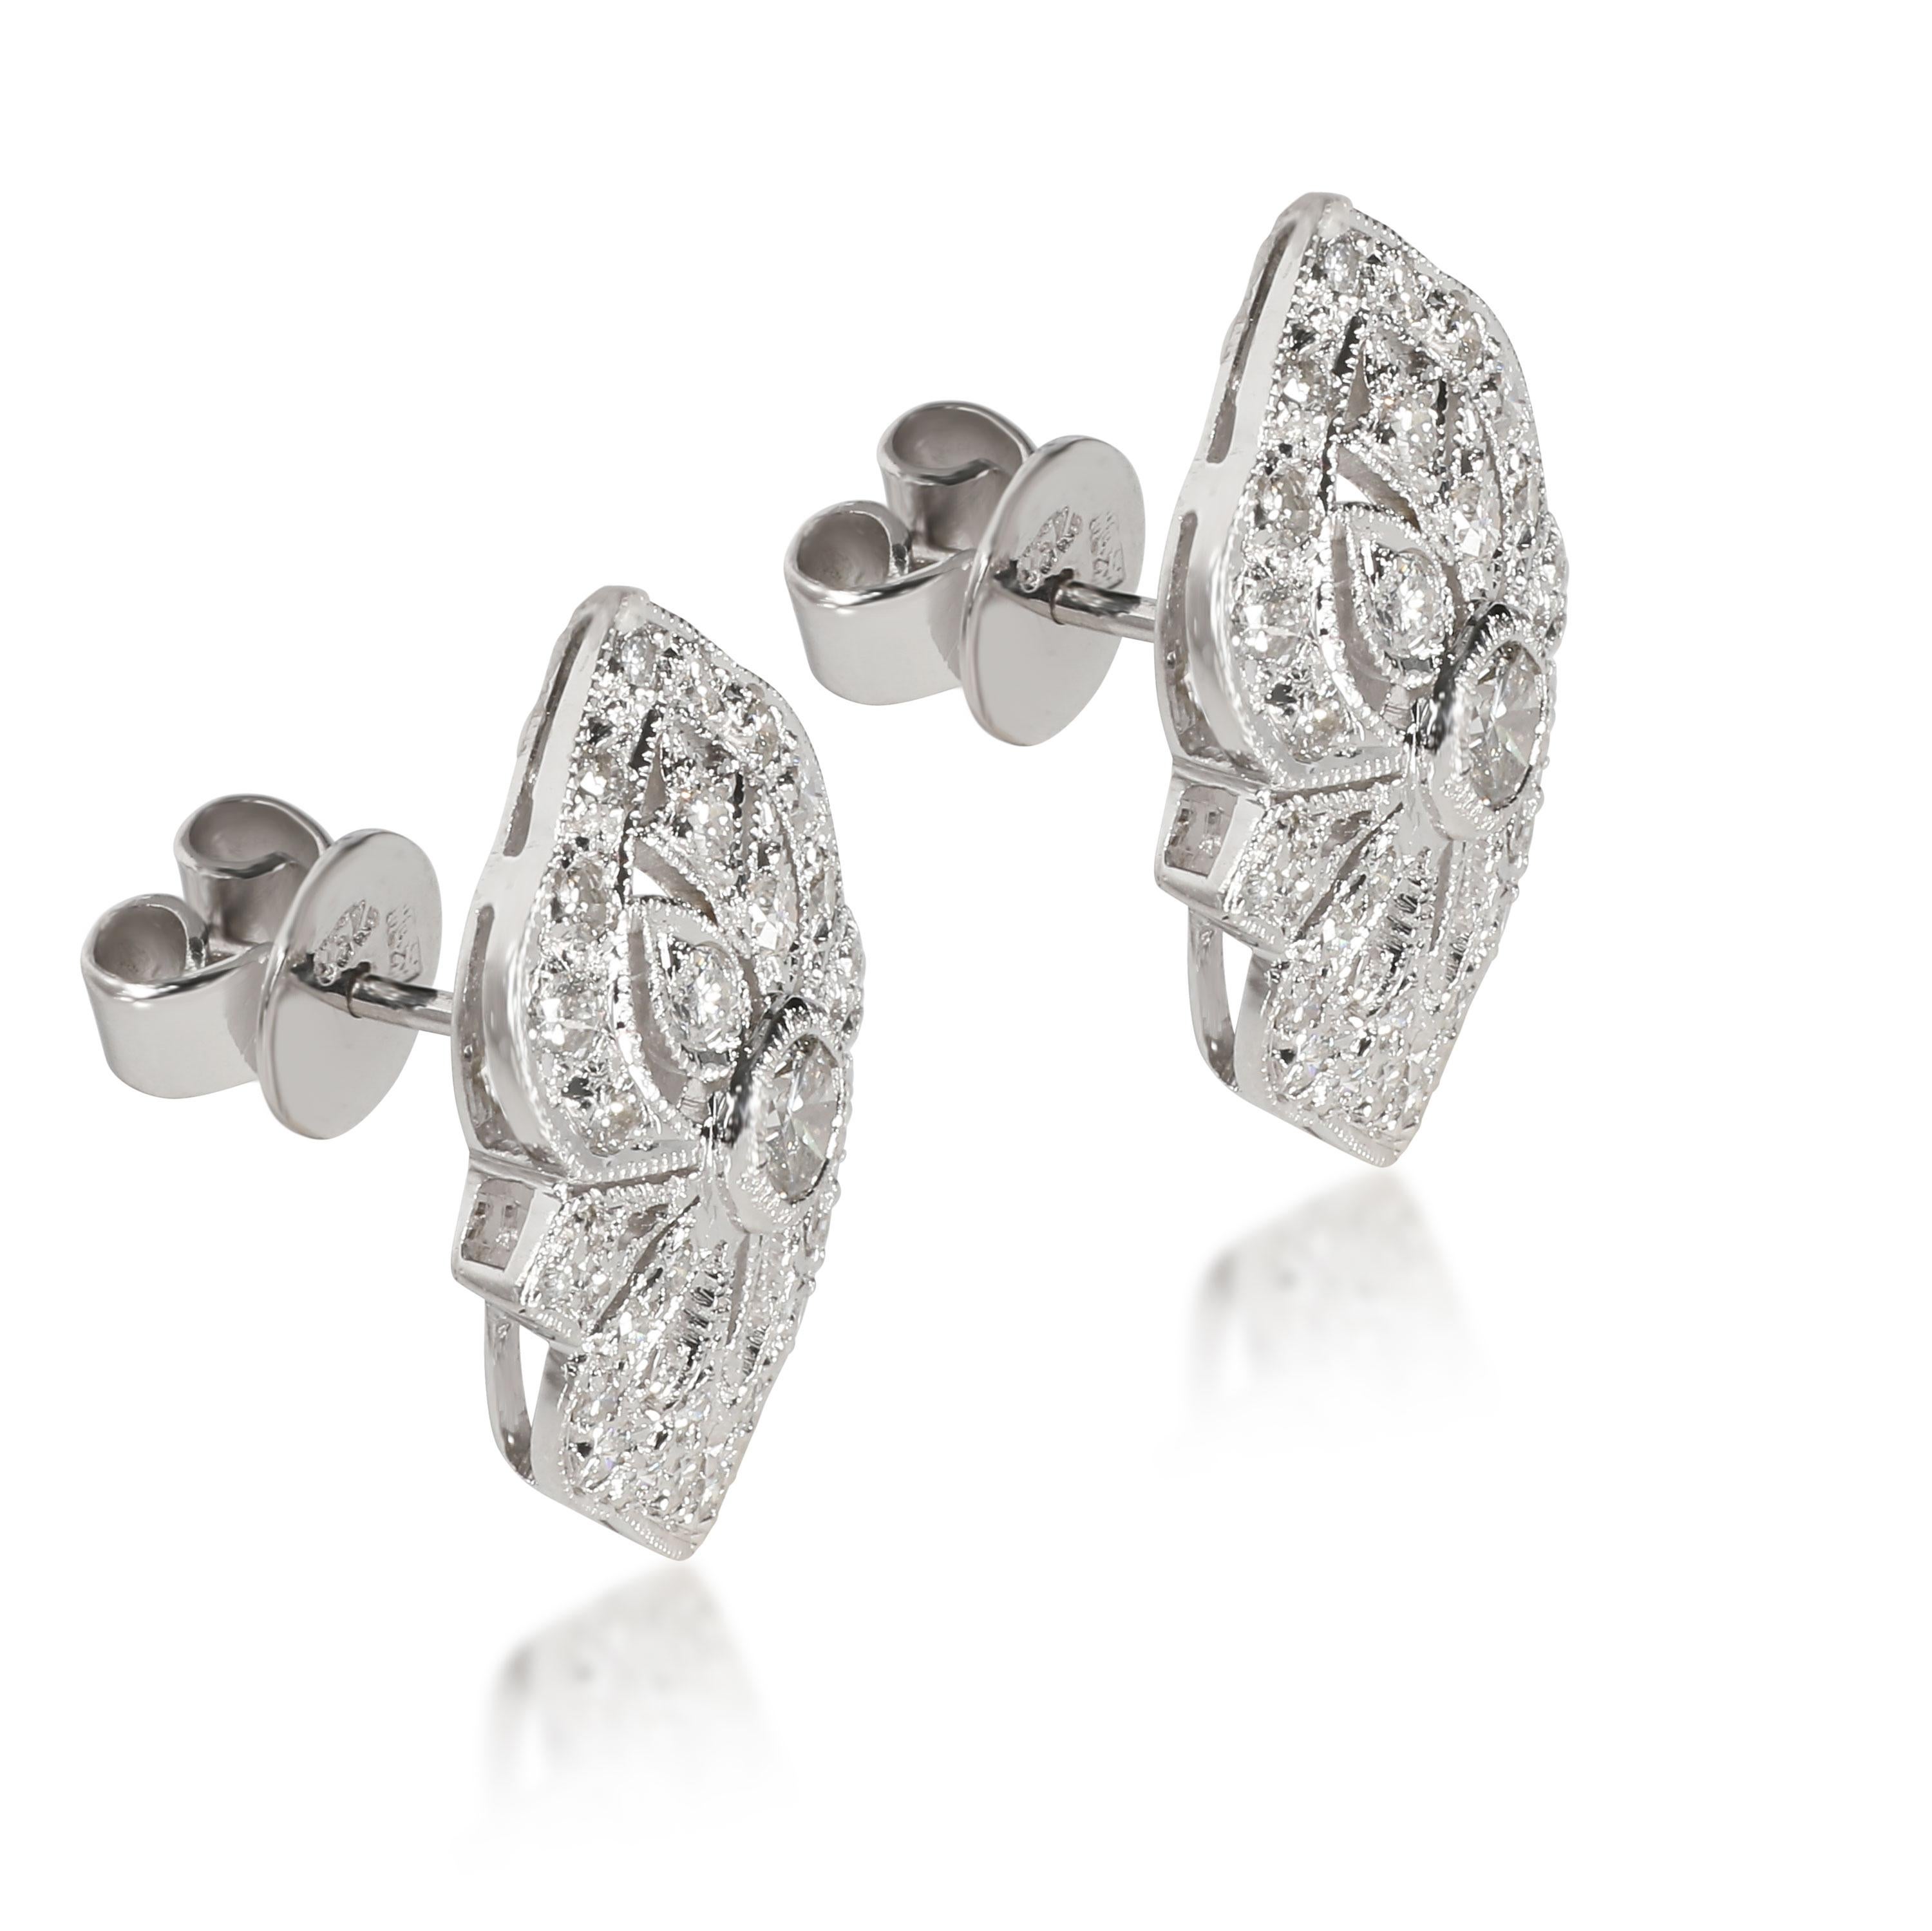 Modern Vintage Inspired Diamond Earrings in 18K White Gold 1.32 CTW